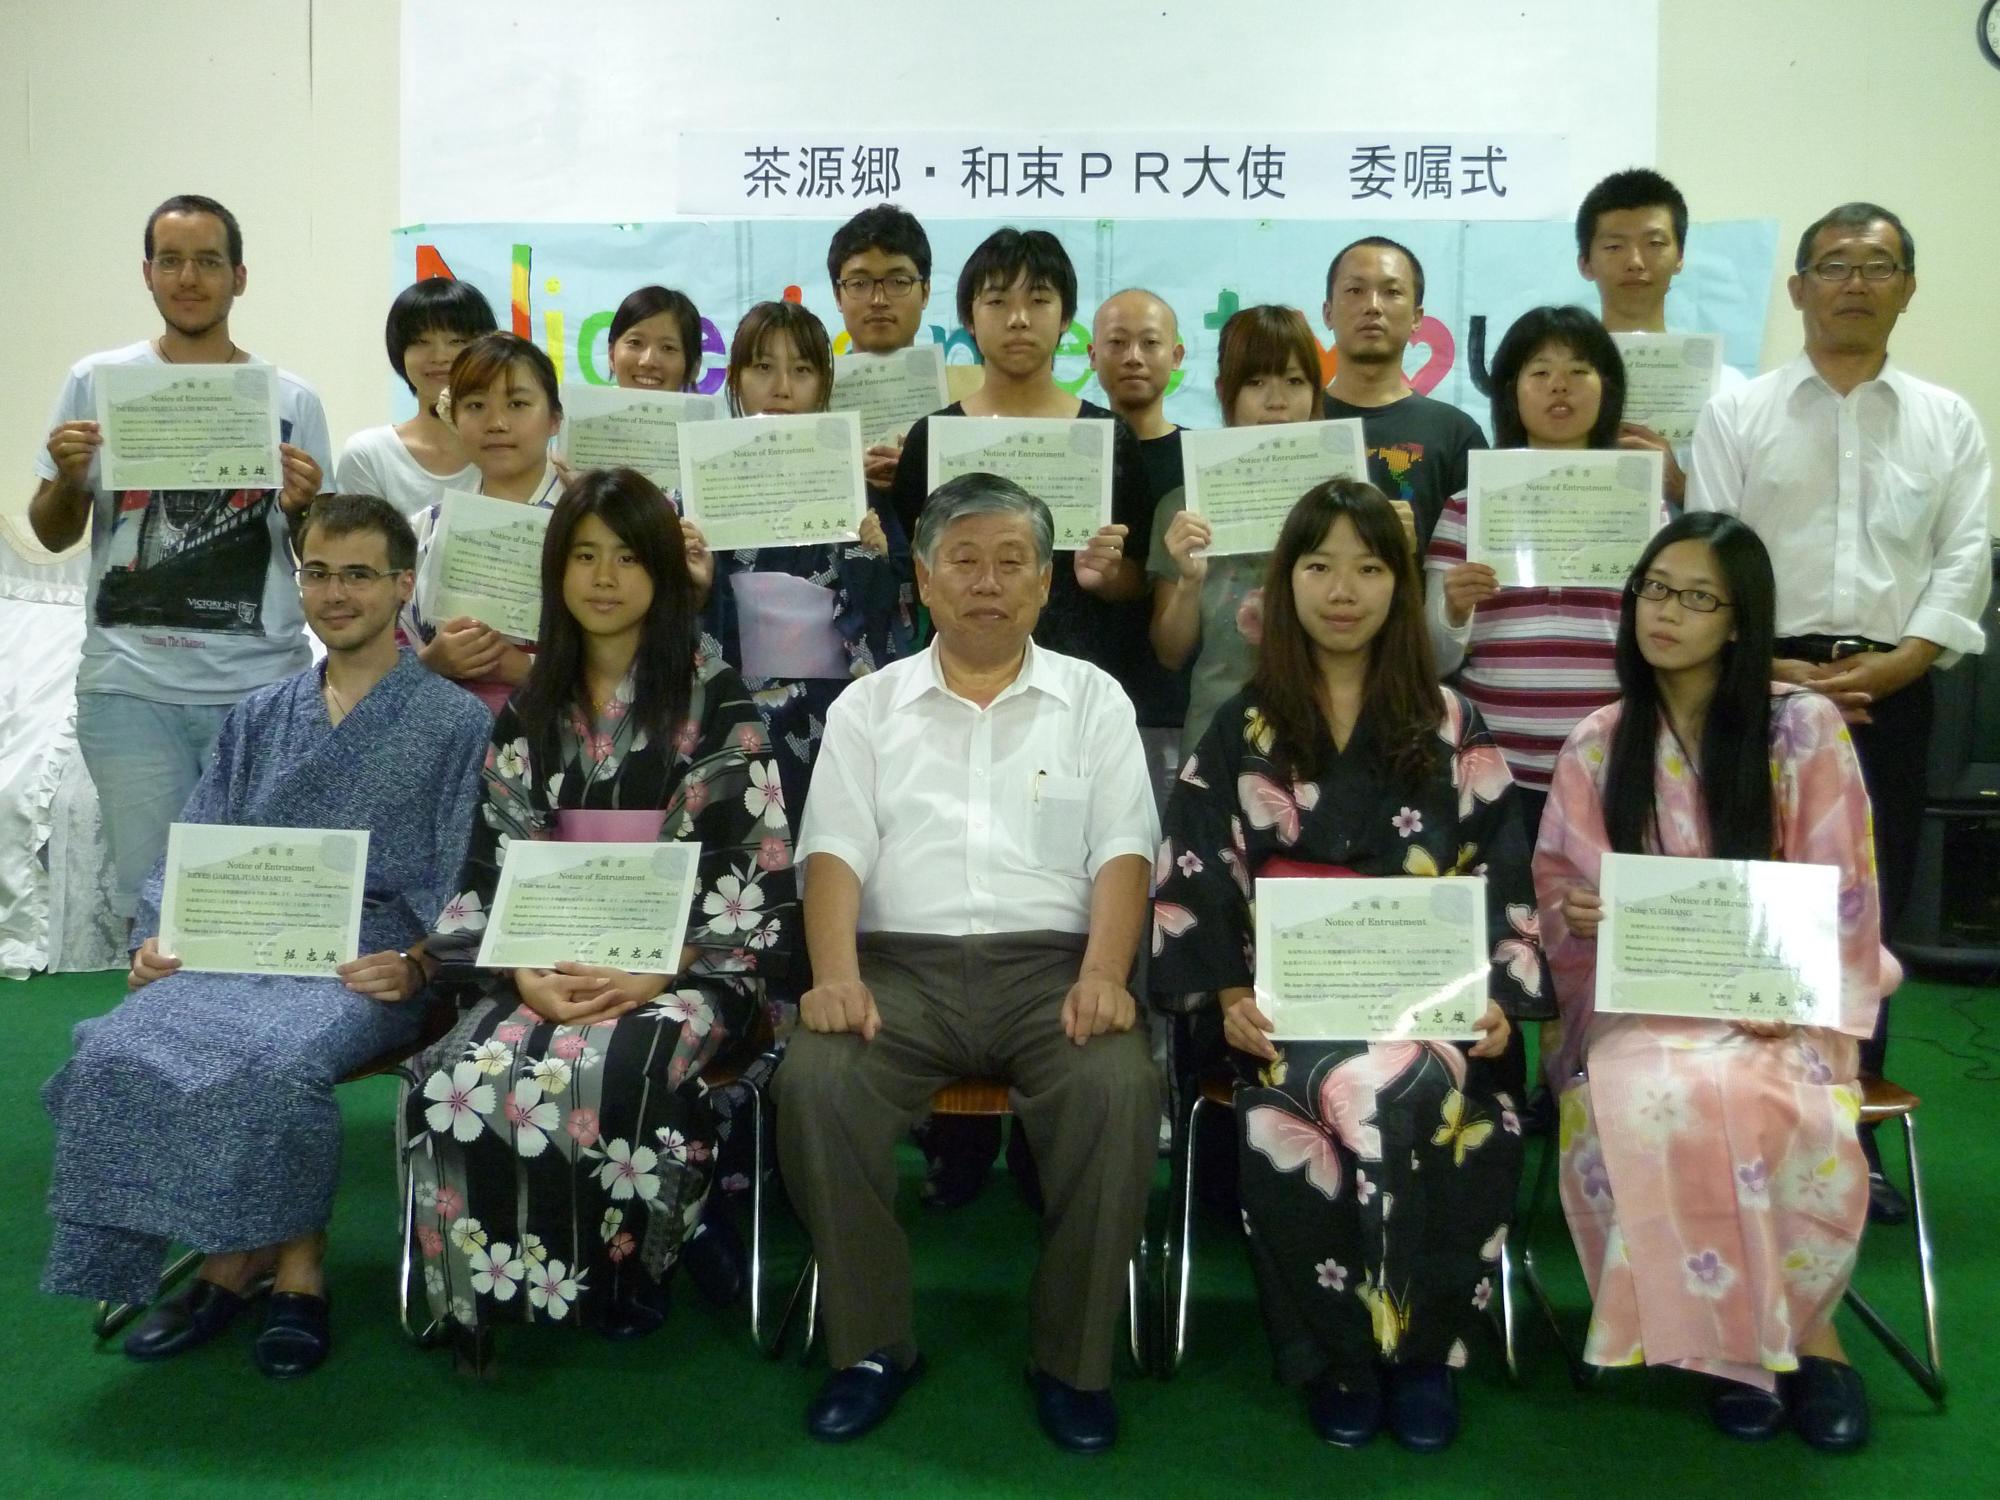 第1号の茶源郷・和束PR大使として委嘱した13名が委嘱書を持ち、町長やスタッフと一緒に記念撮影をしている写真